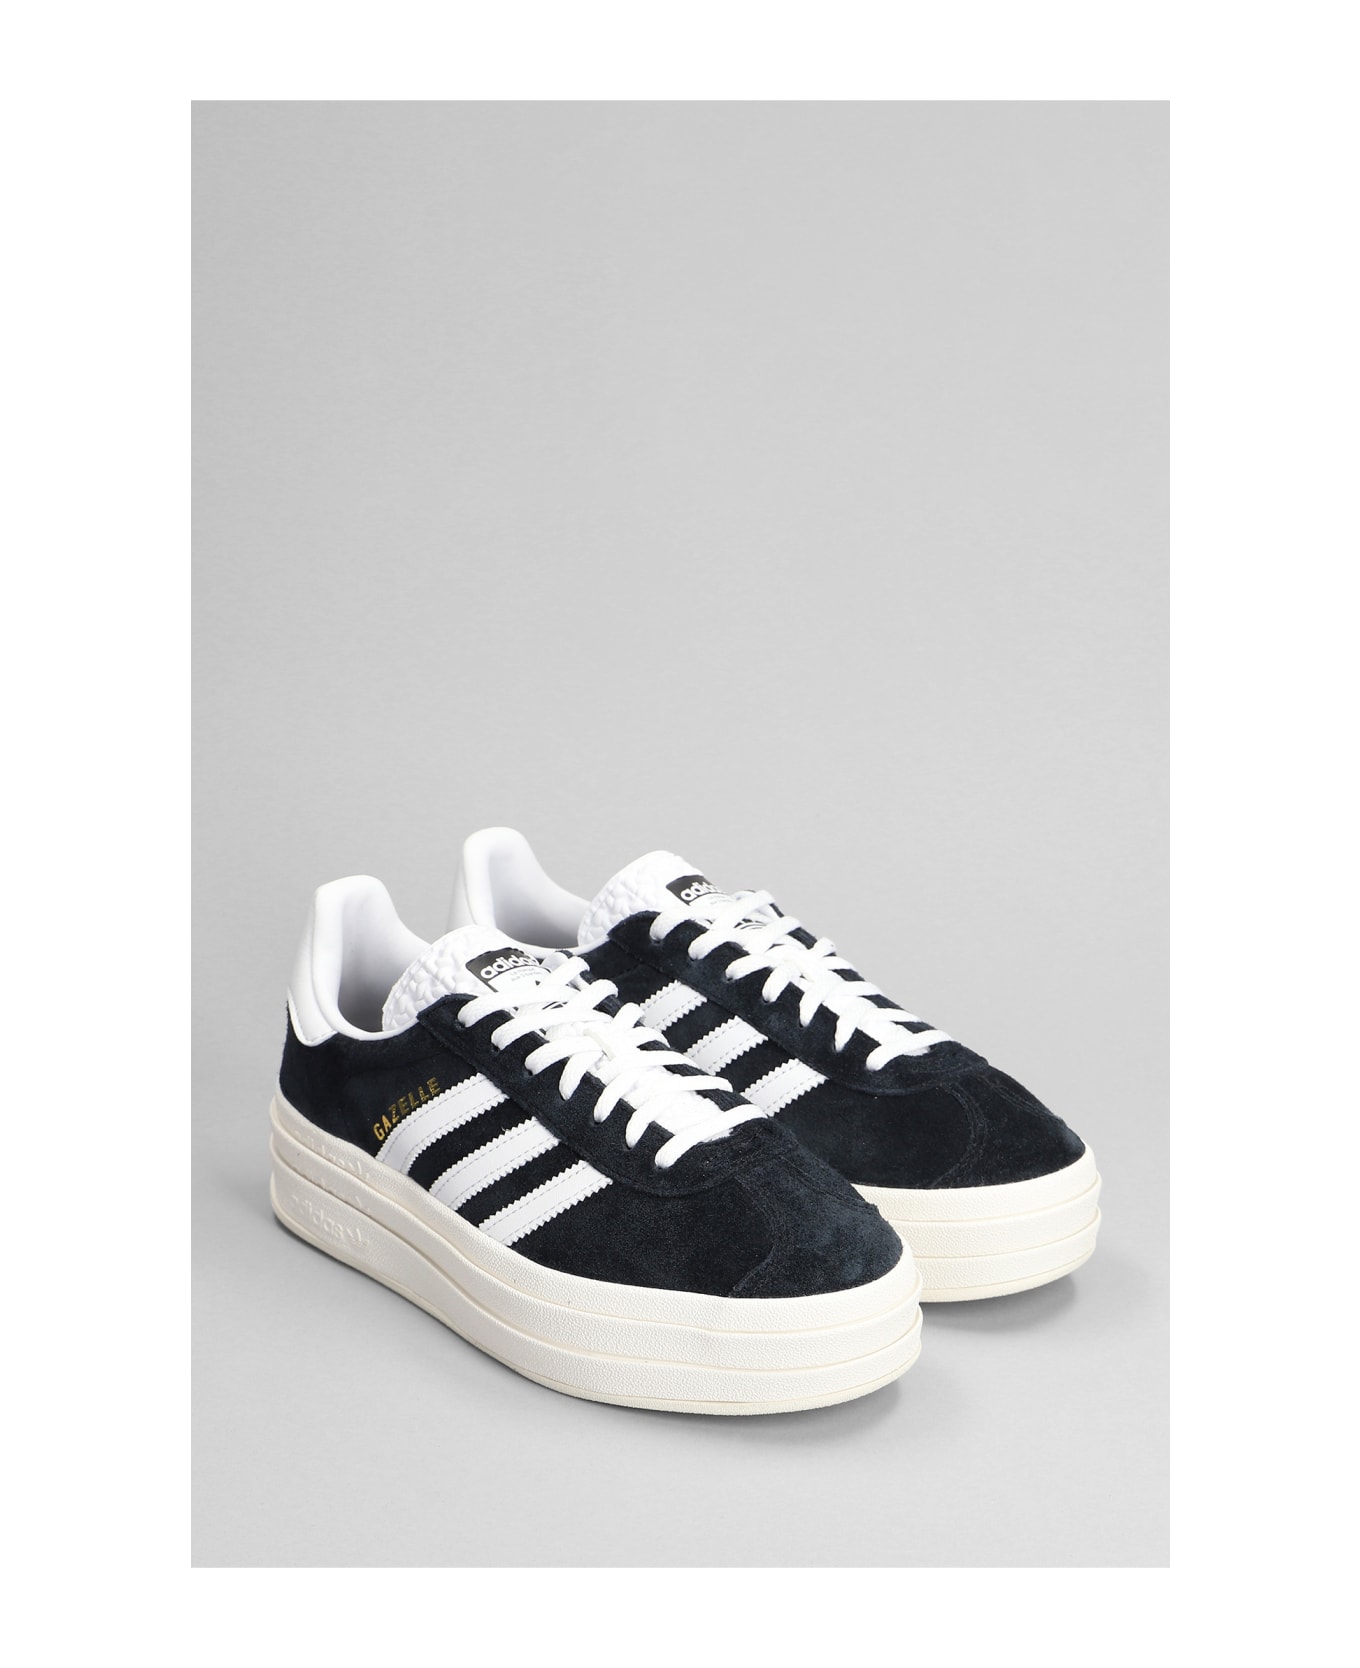 Adidas Originals Gazelle Bold Sneakers In Black Suede - Black